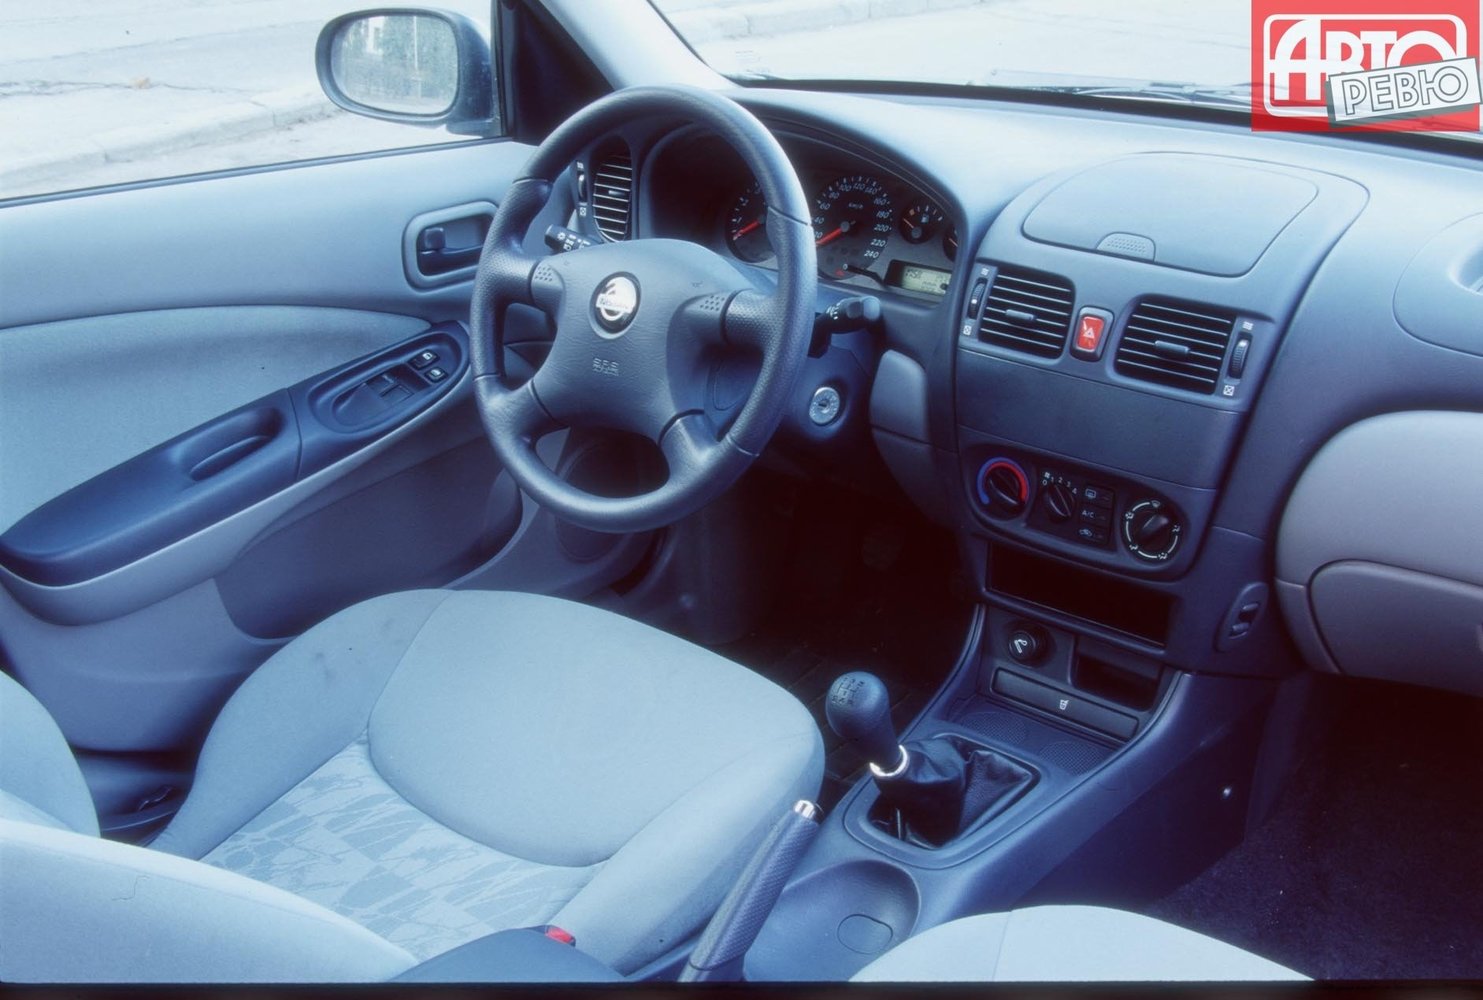 хэтчбек 5 дв. Nissan Almera 2000 - 2003г выпуска модификация 1.5 MT (90 л.с.)